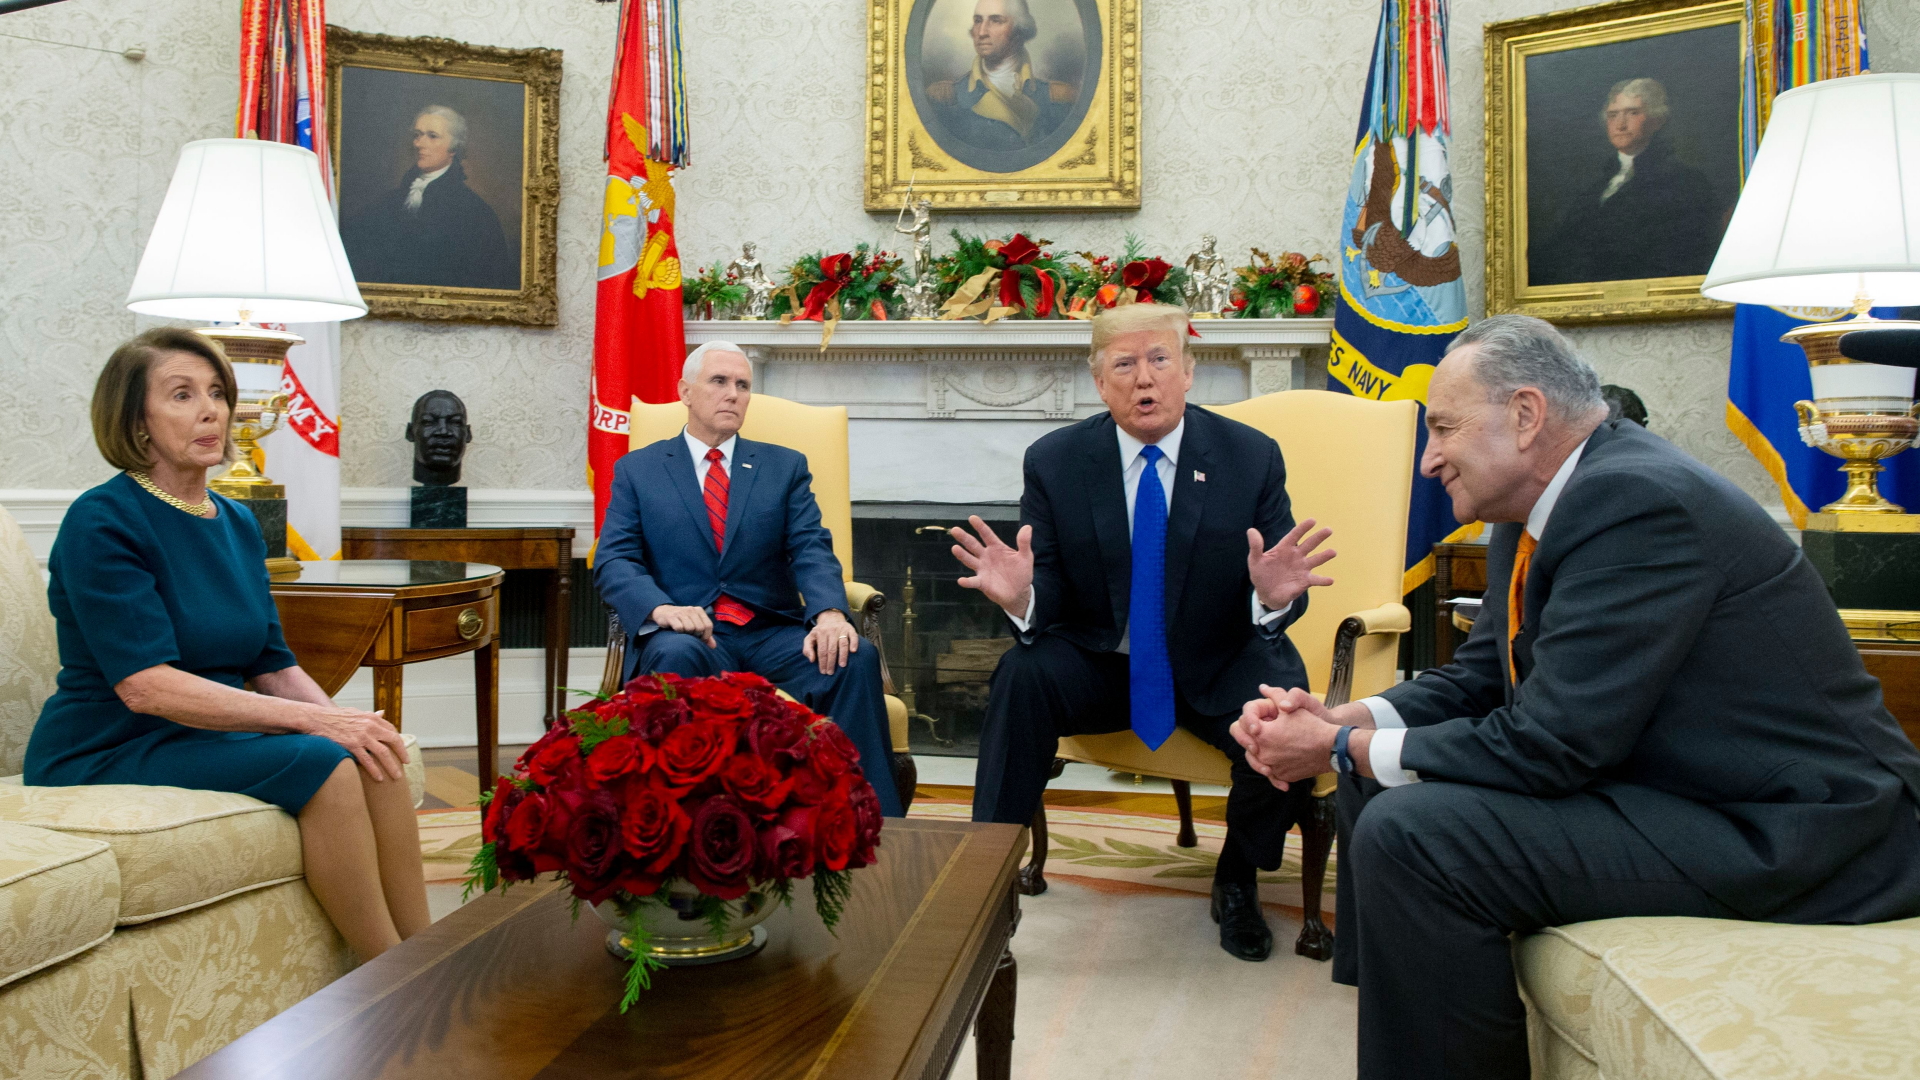 US-Präsident Trump spricht im Oval Office  | Bildquelle: MICHAEL REYNOLDS/EPA-EFE/REX